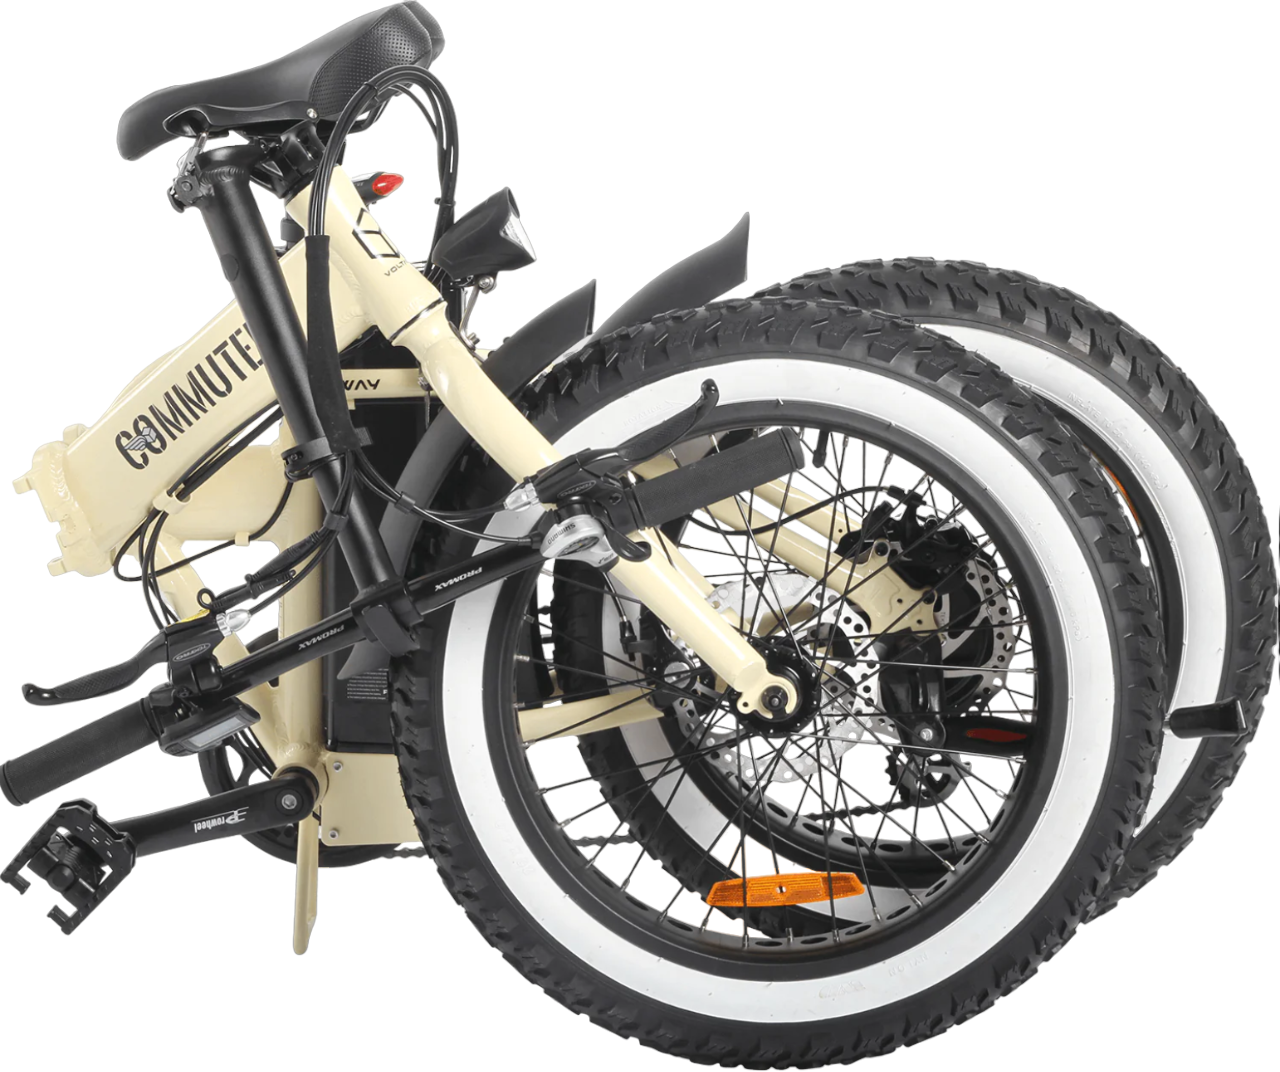 opgevouwen-fatbike-genaamd-voltaway-commuter-met-sportieve-eigenschappen-en-zand-kleur,-gefotografeerd-vanaf-de-zijkant